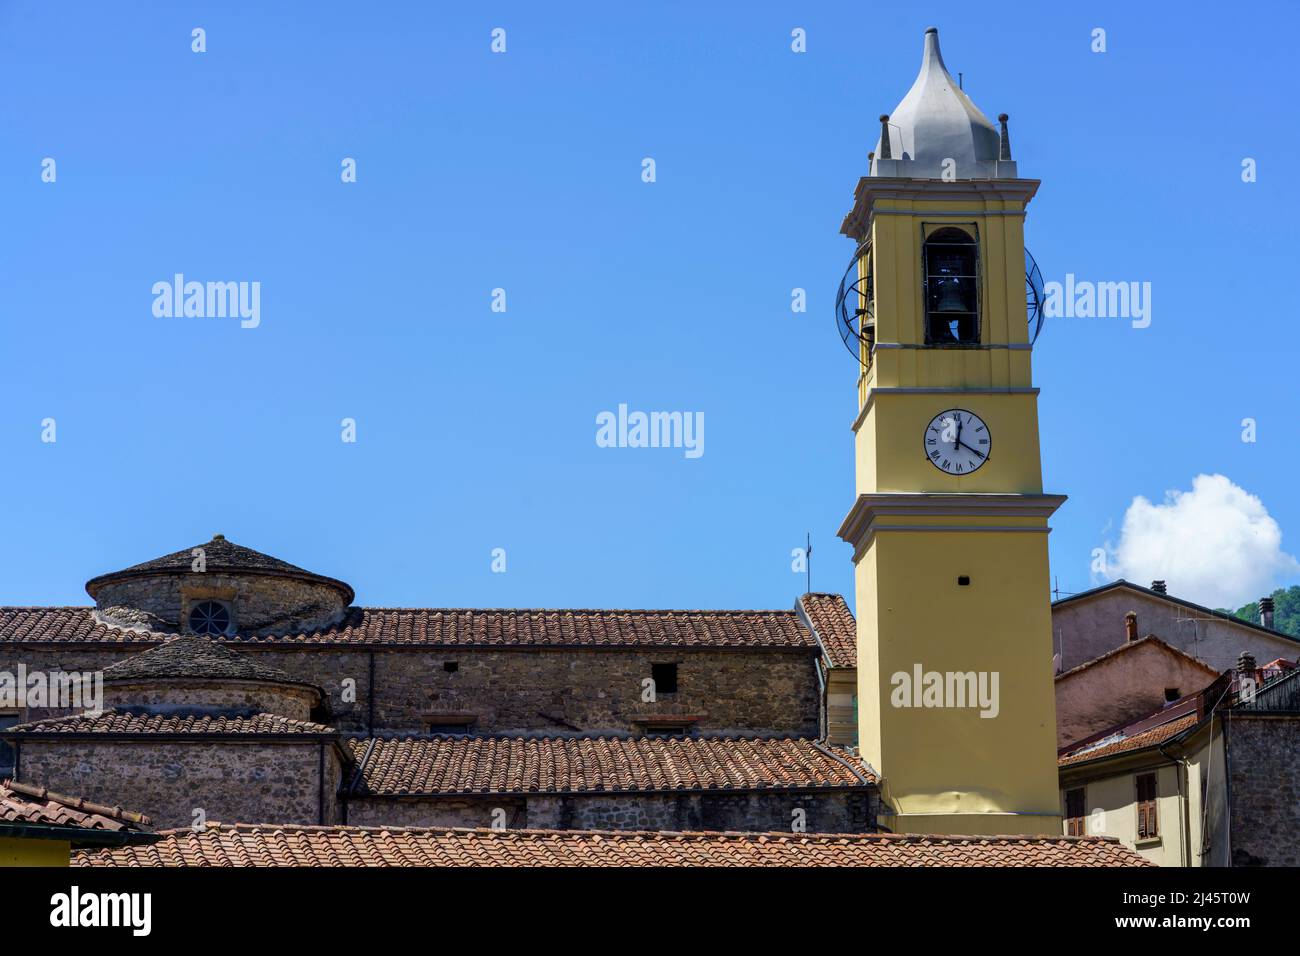 Villafranca in Lunigiana, Massa e Carrara province, Tuscany, Italy: belfry of historic church Stock Photo